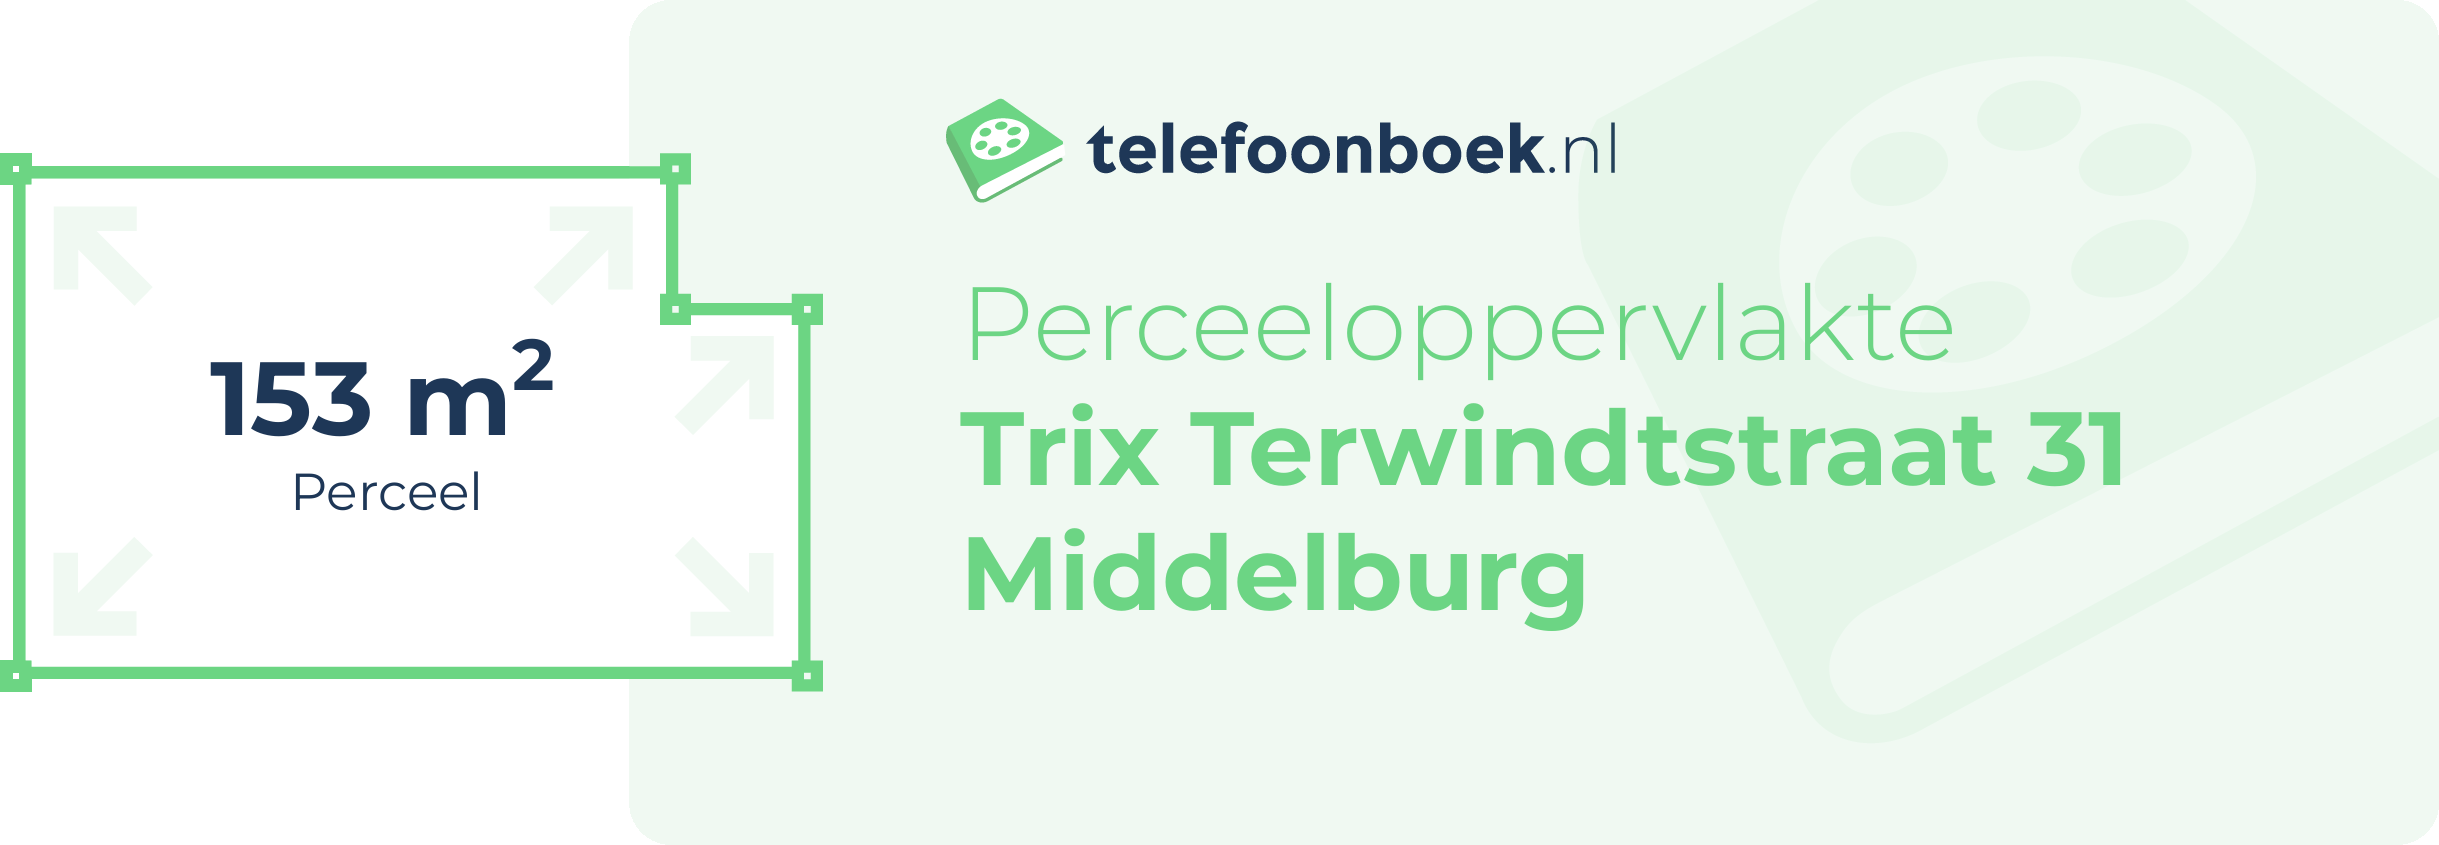 Perceeloppervlakte Trix Terwindtstraat 31 Middelburg